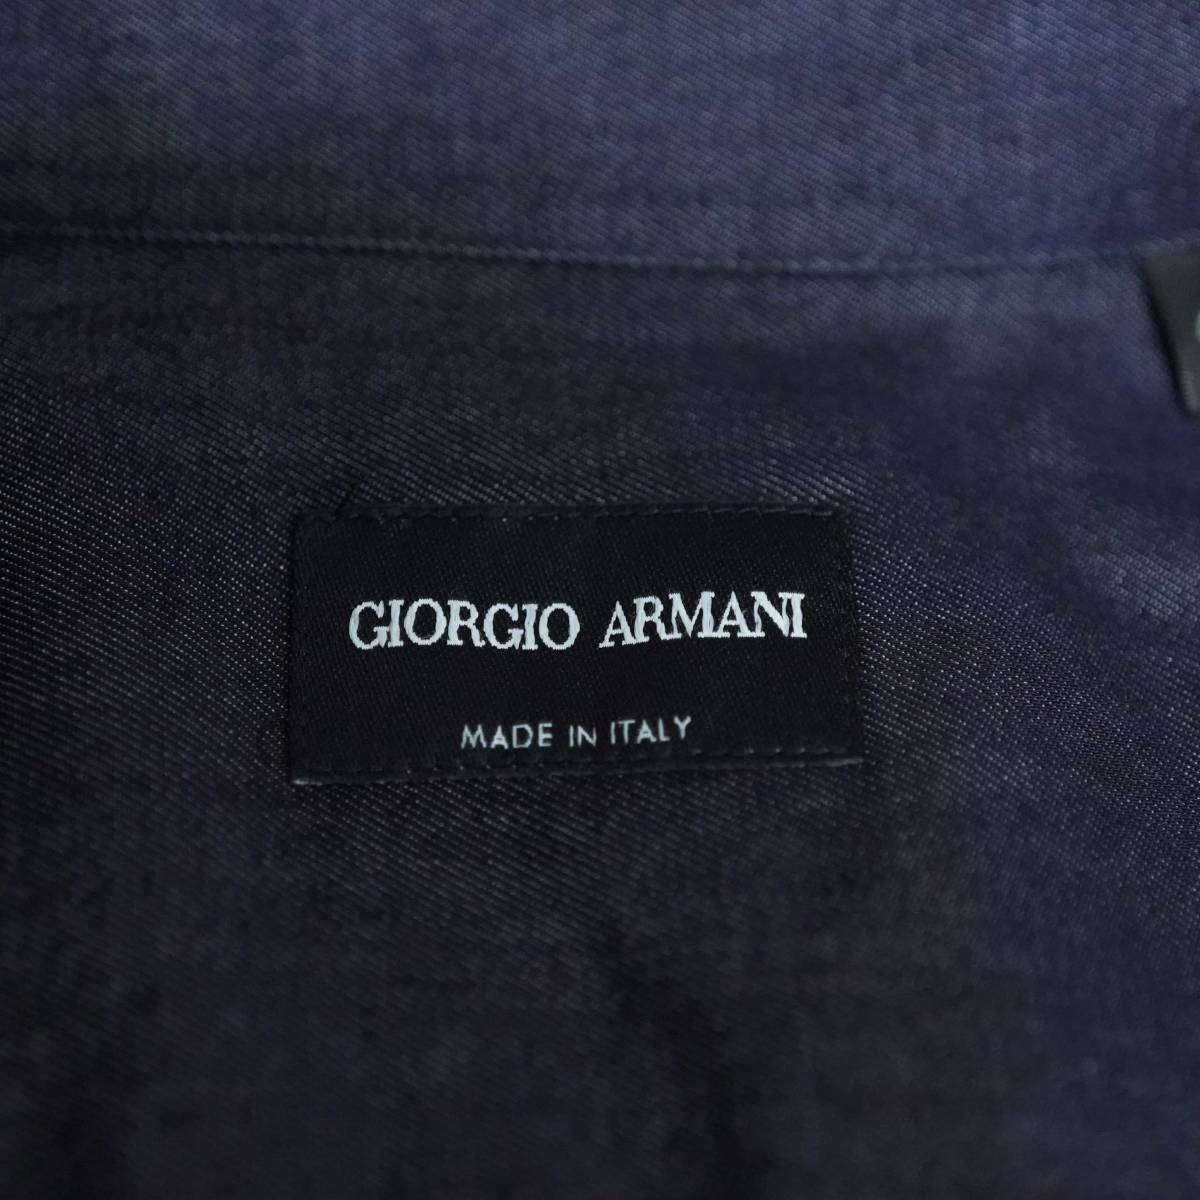 素晴らしい究極の艶やかなデニムシャツ GIORGIO ARMANI ジョルジオ